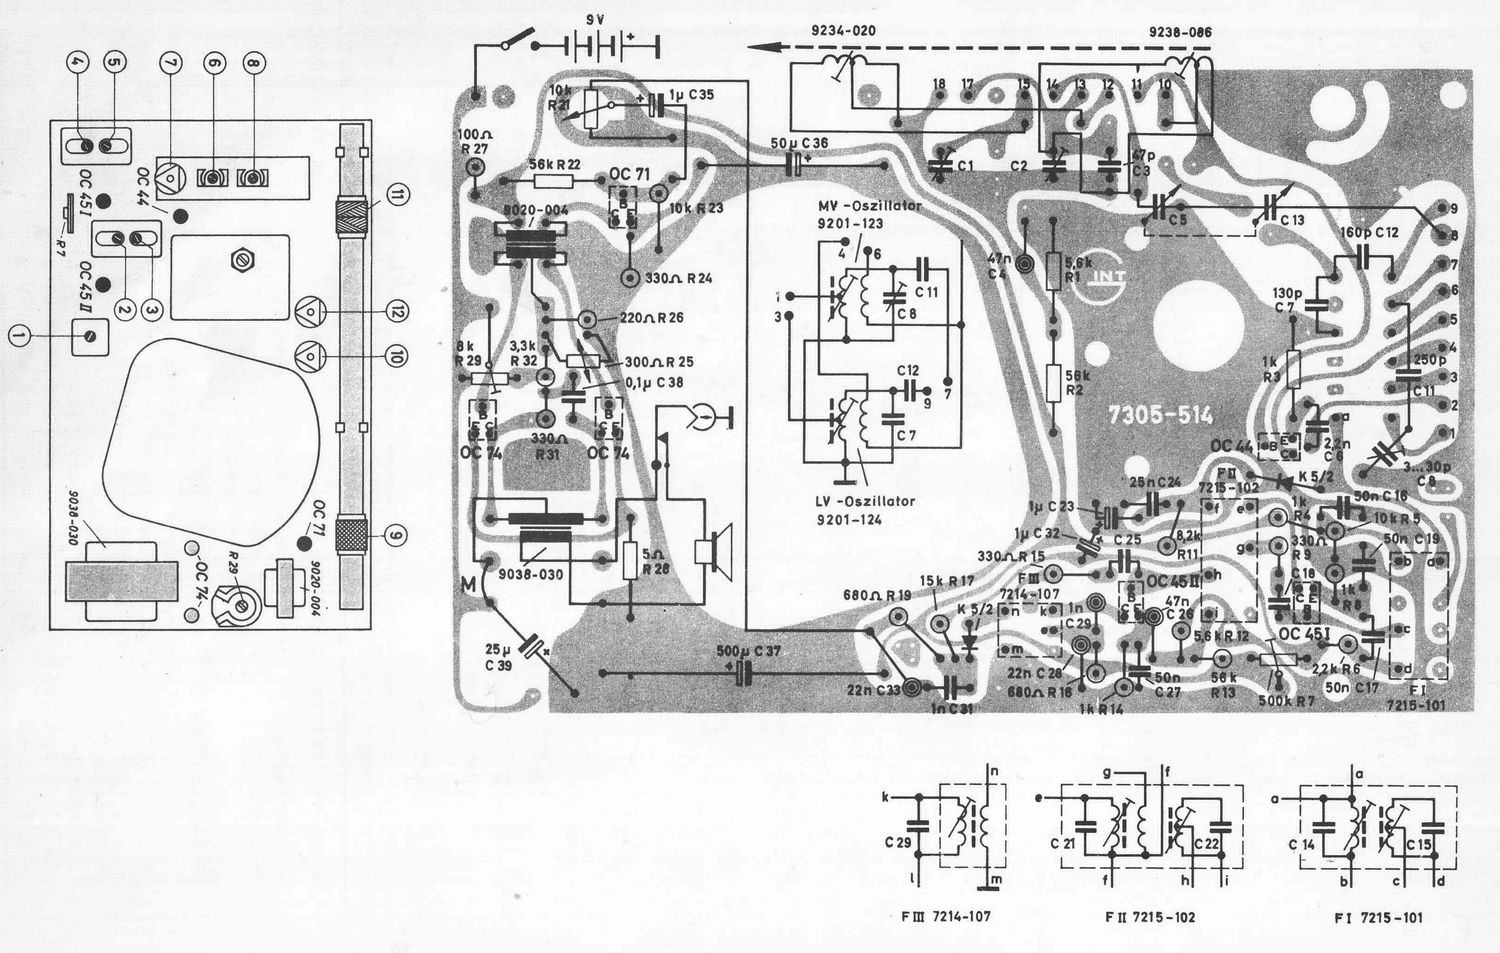 Grundig Transistor Boy 59 Schematic